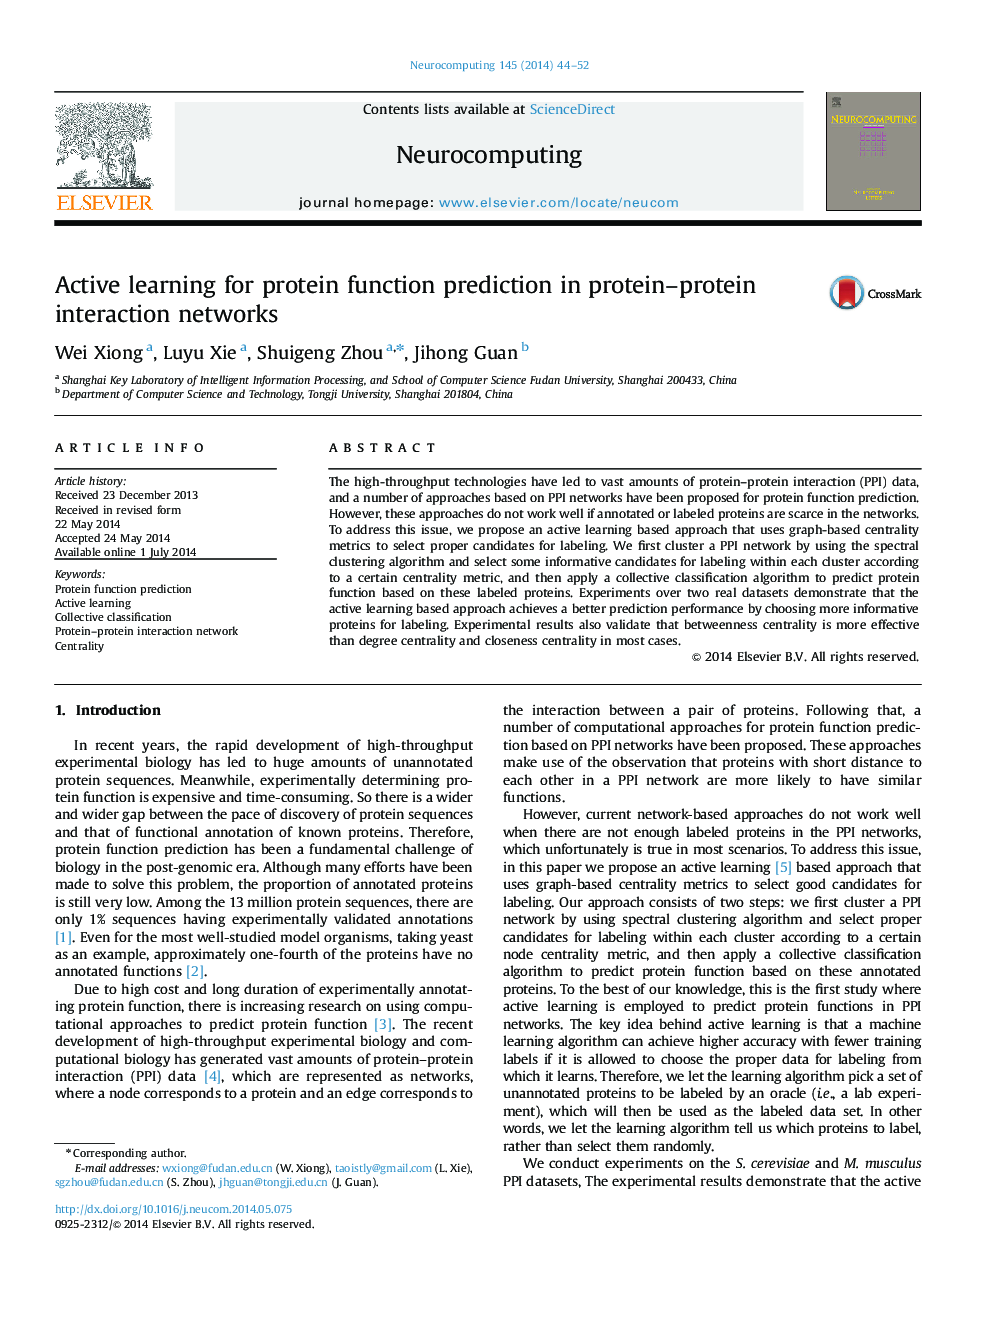 یادگیری فعال برای پیش بینی عملکرد پروتئین در شبکه های متقابل پروتئین-پروتئین 